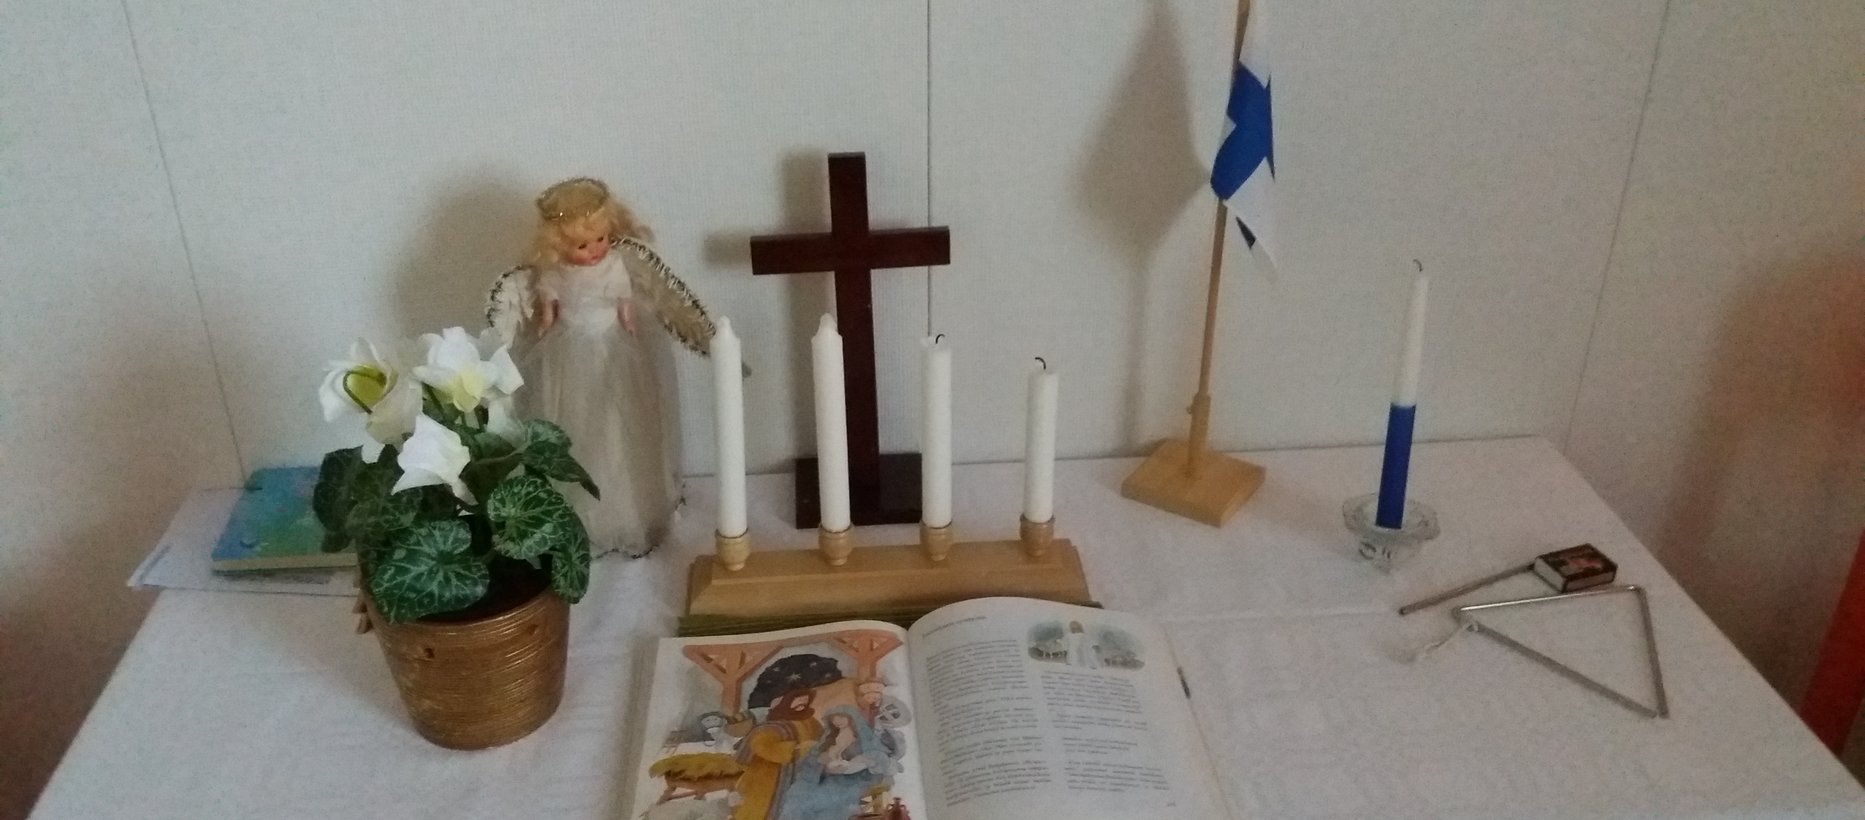 Kerhon alttaripöydällä adventtikynttilät, itsenäisyyspäivän kynttilä ja Suomenlippu,raamattu, risti ja kukkia